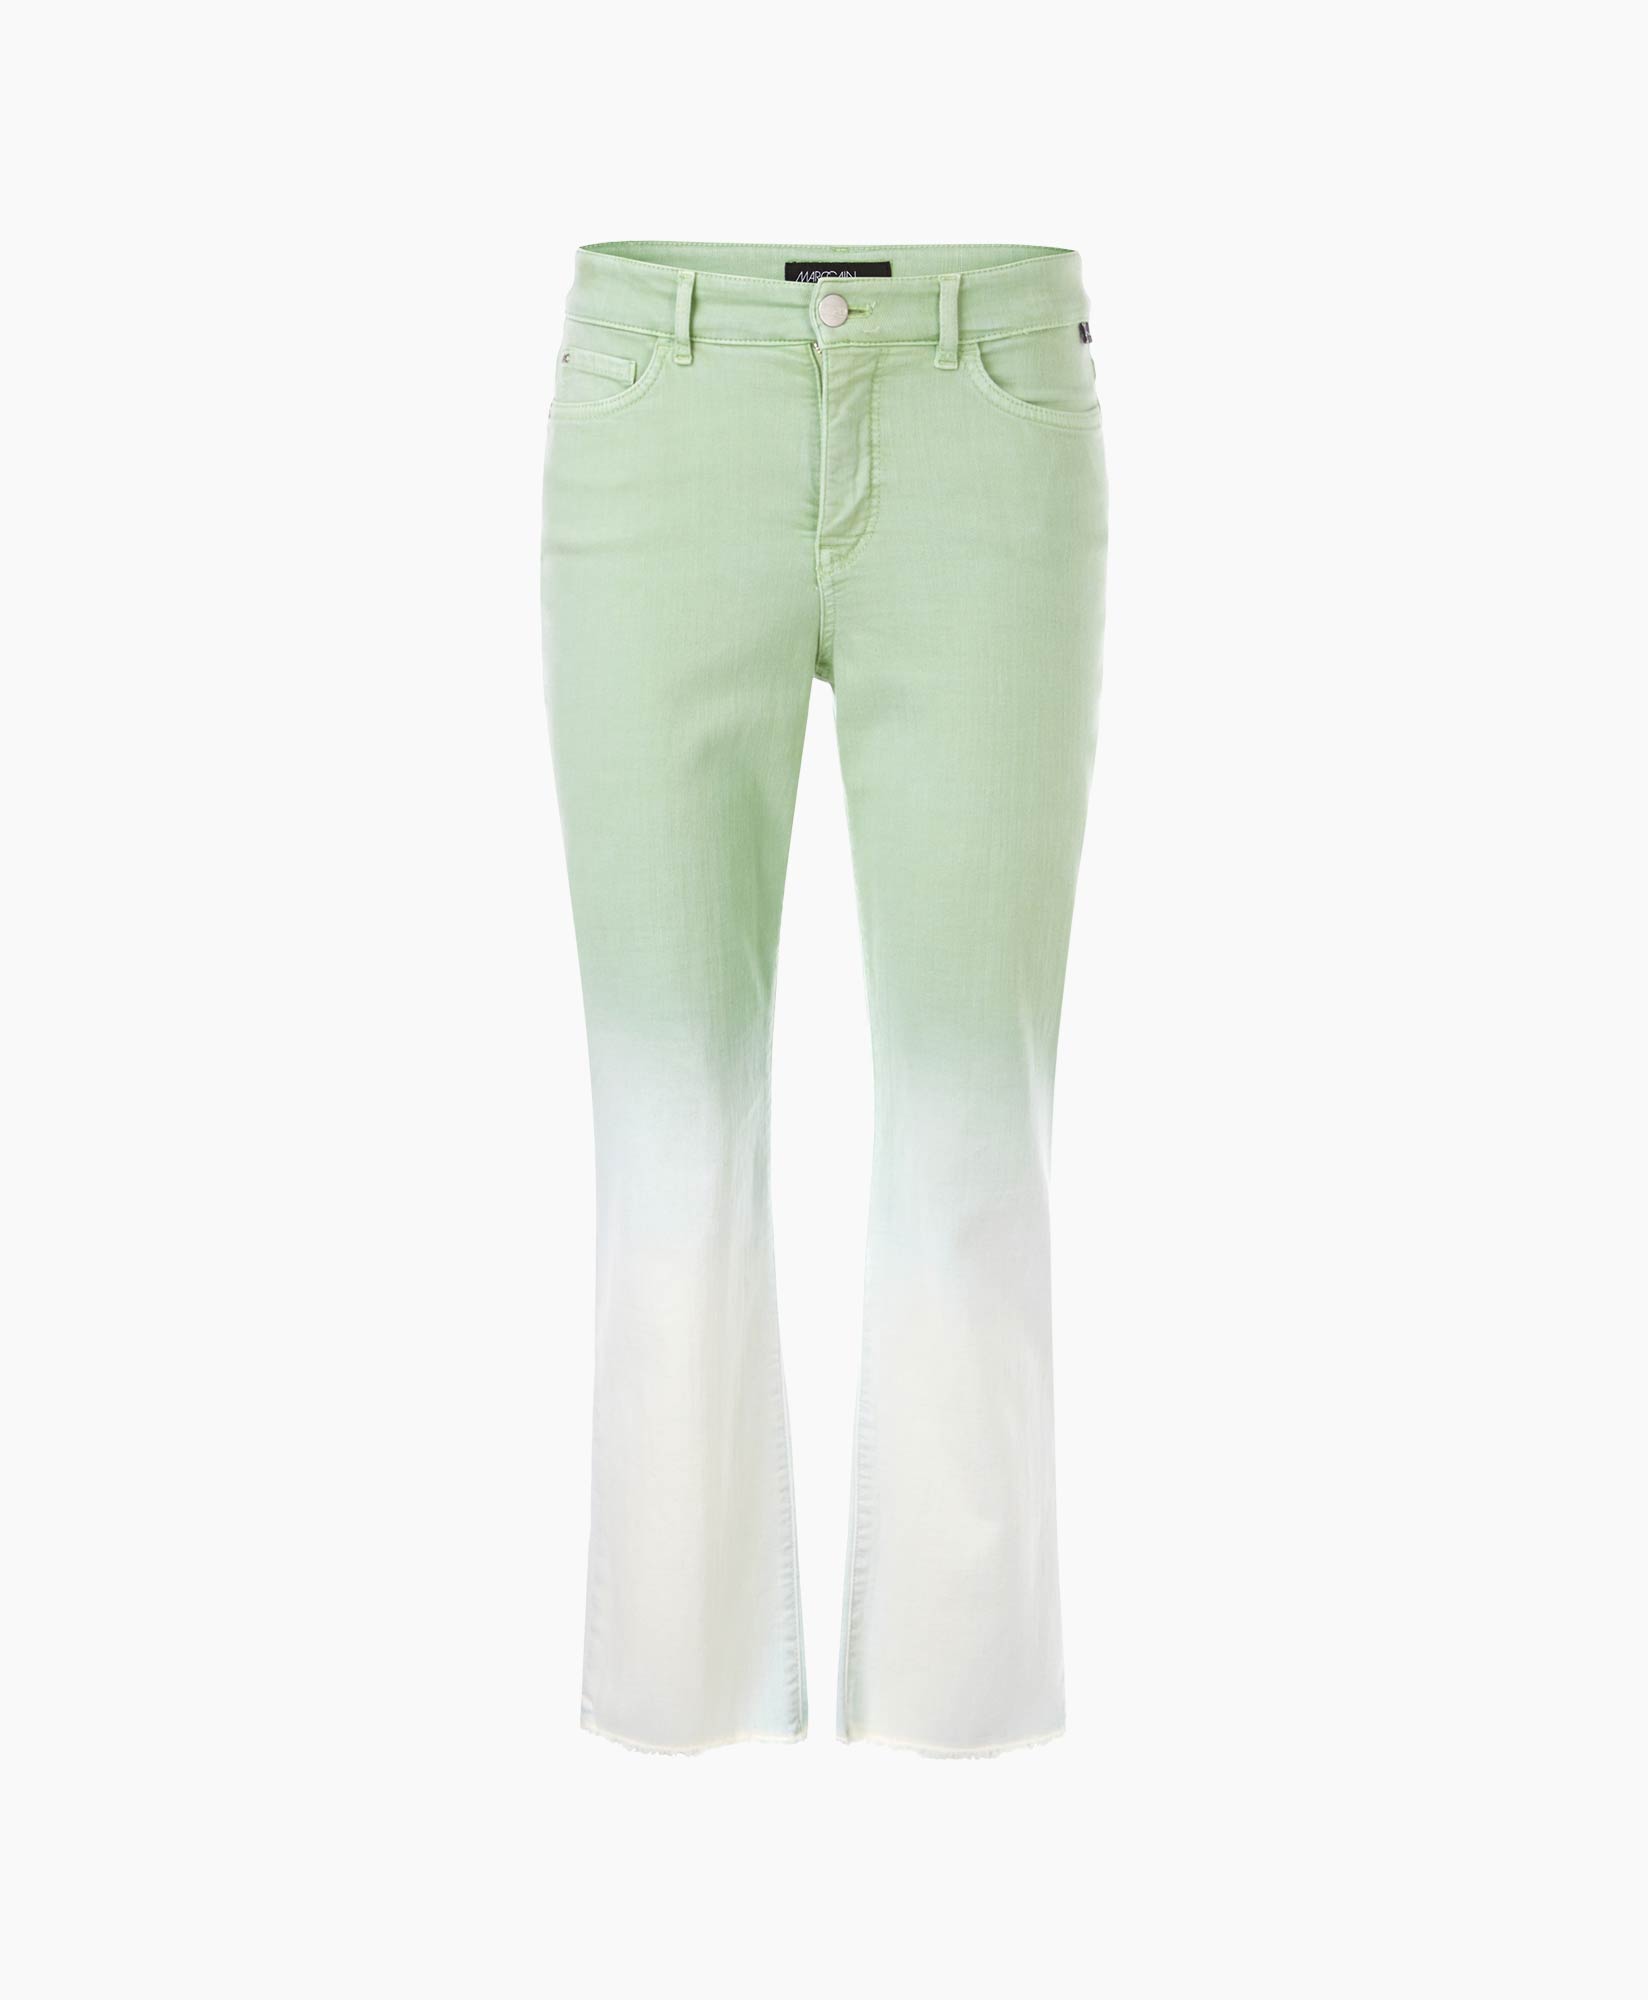 Jeans Wp 82.10 D29 Groen